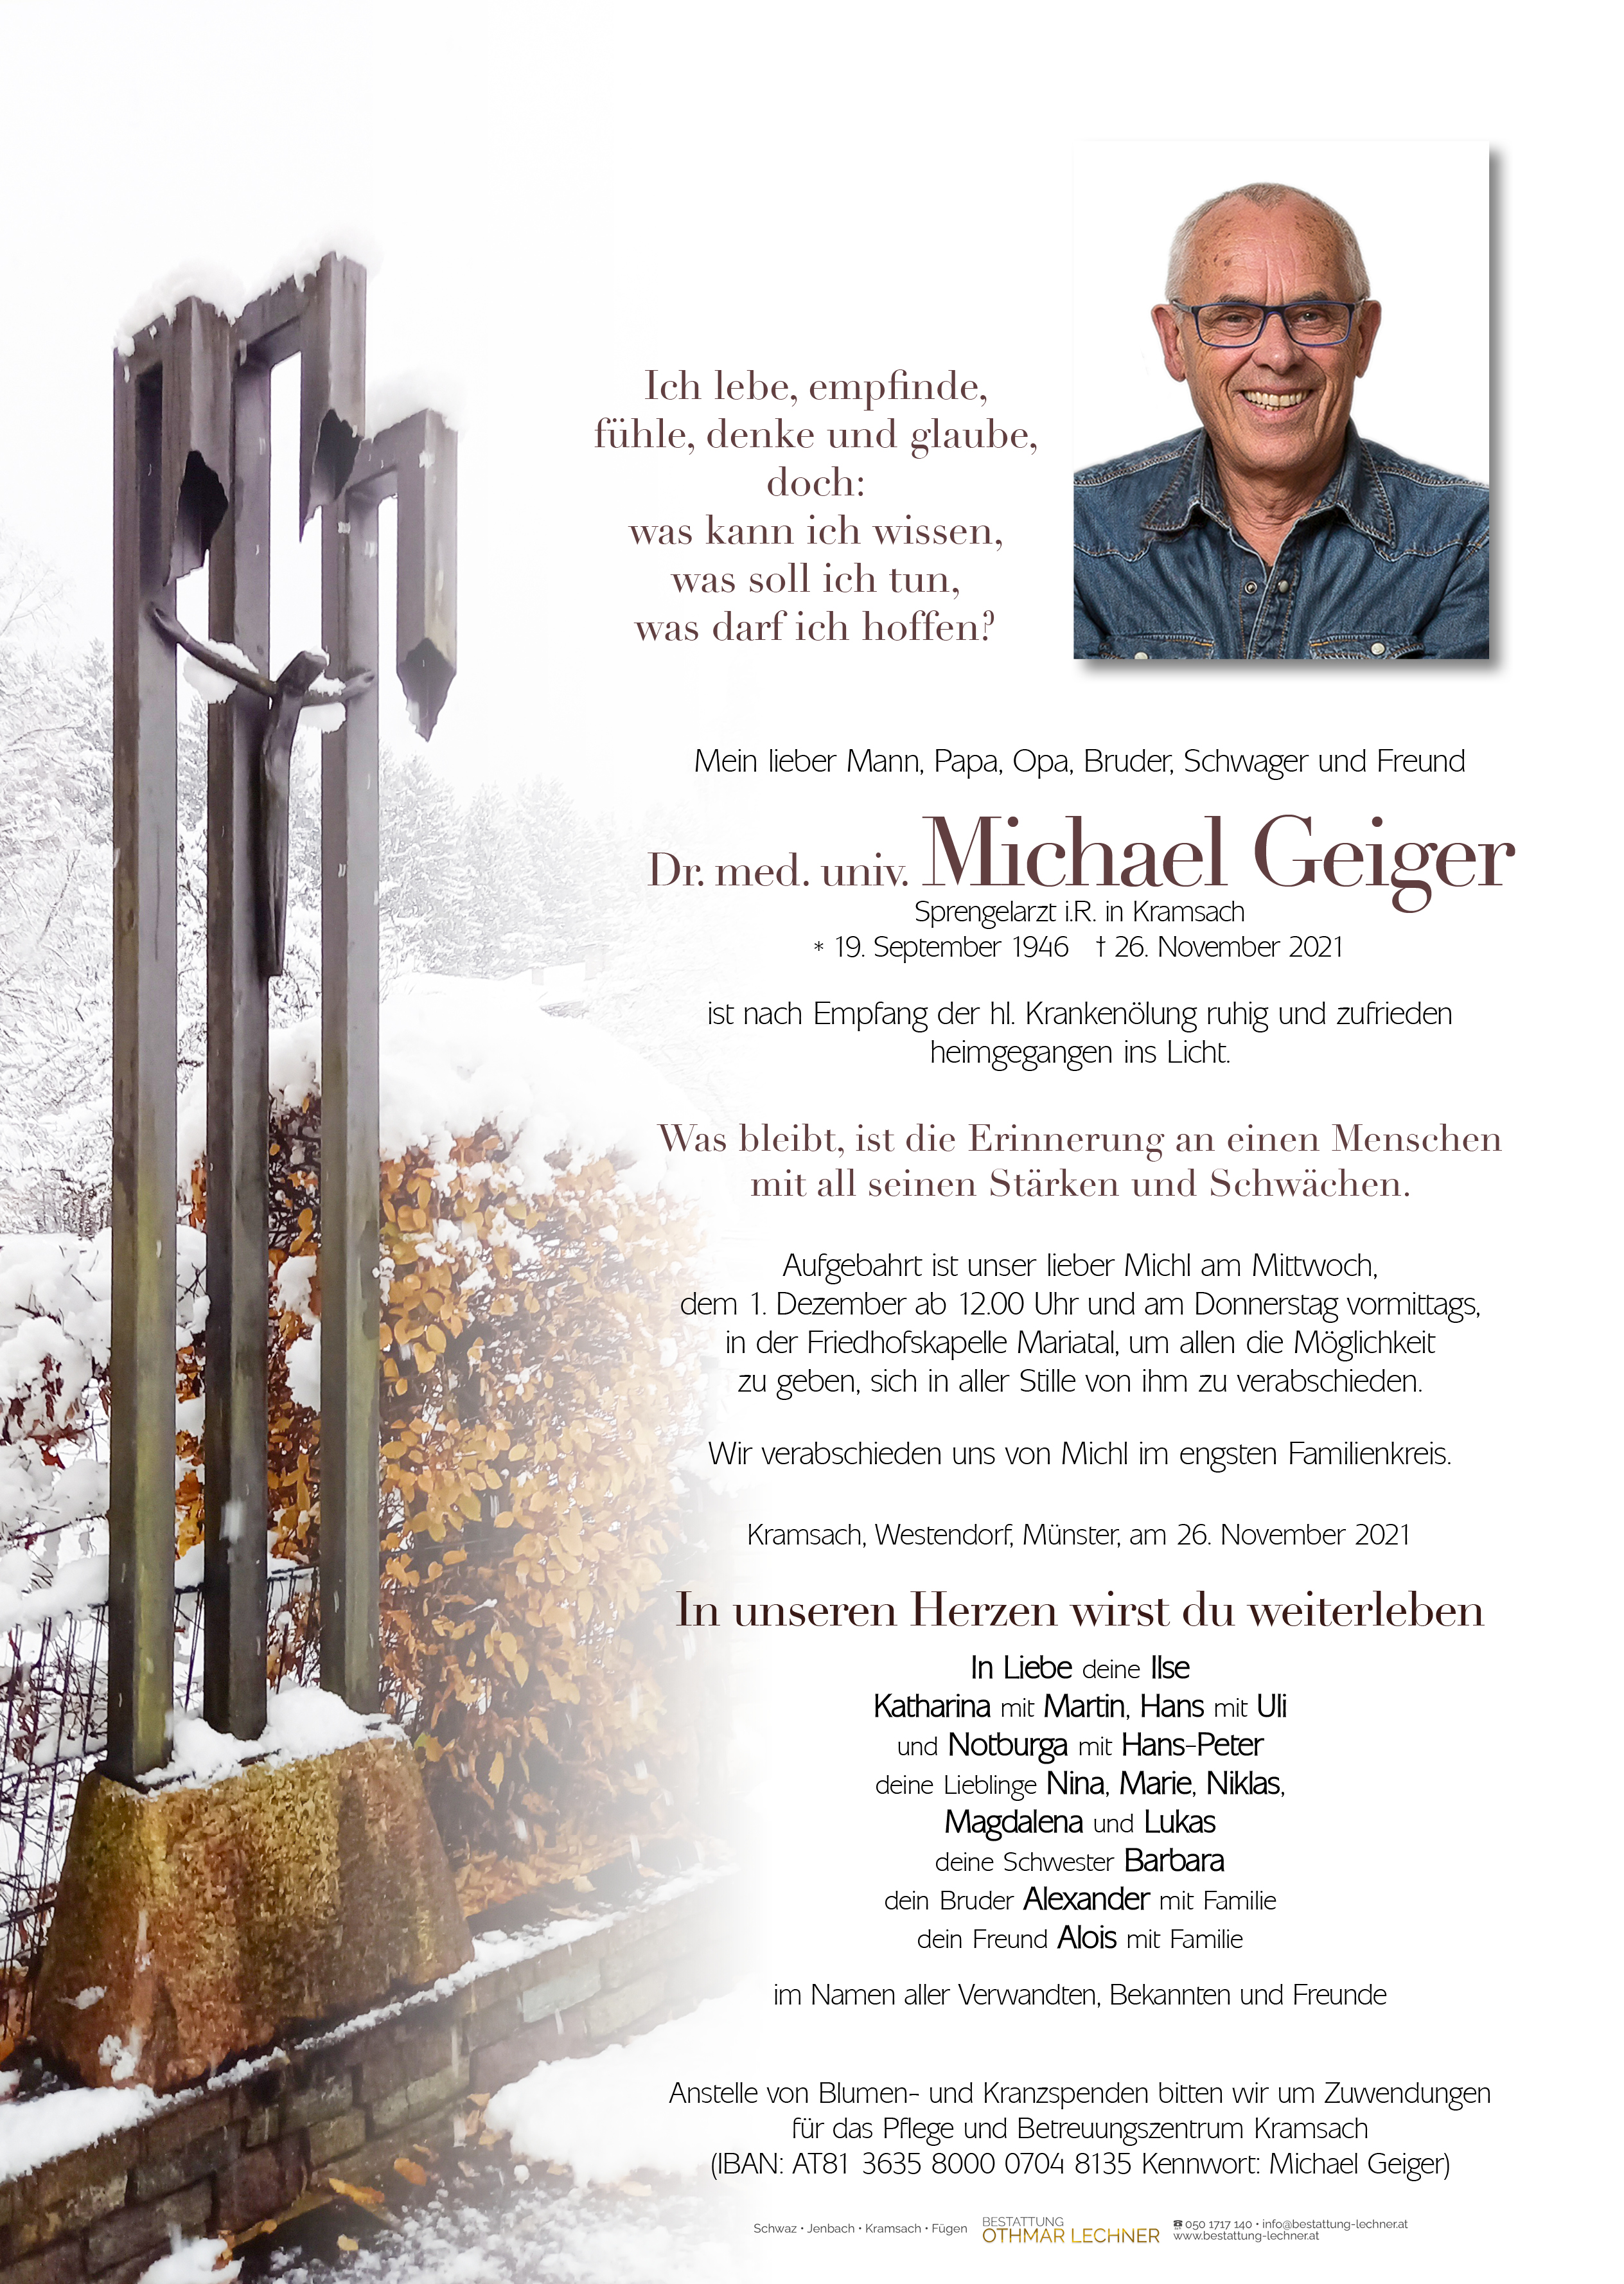 Michael Dr. med. univ. Geiger